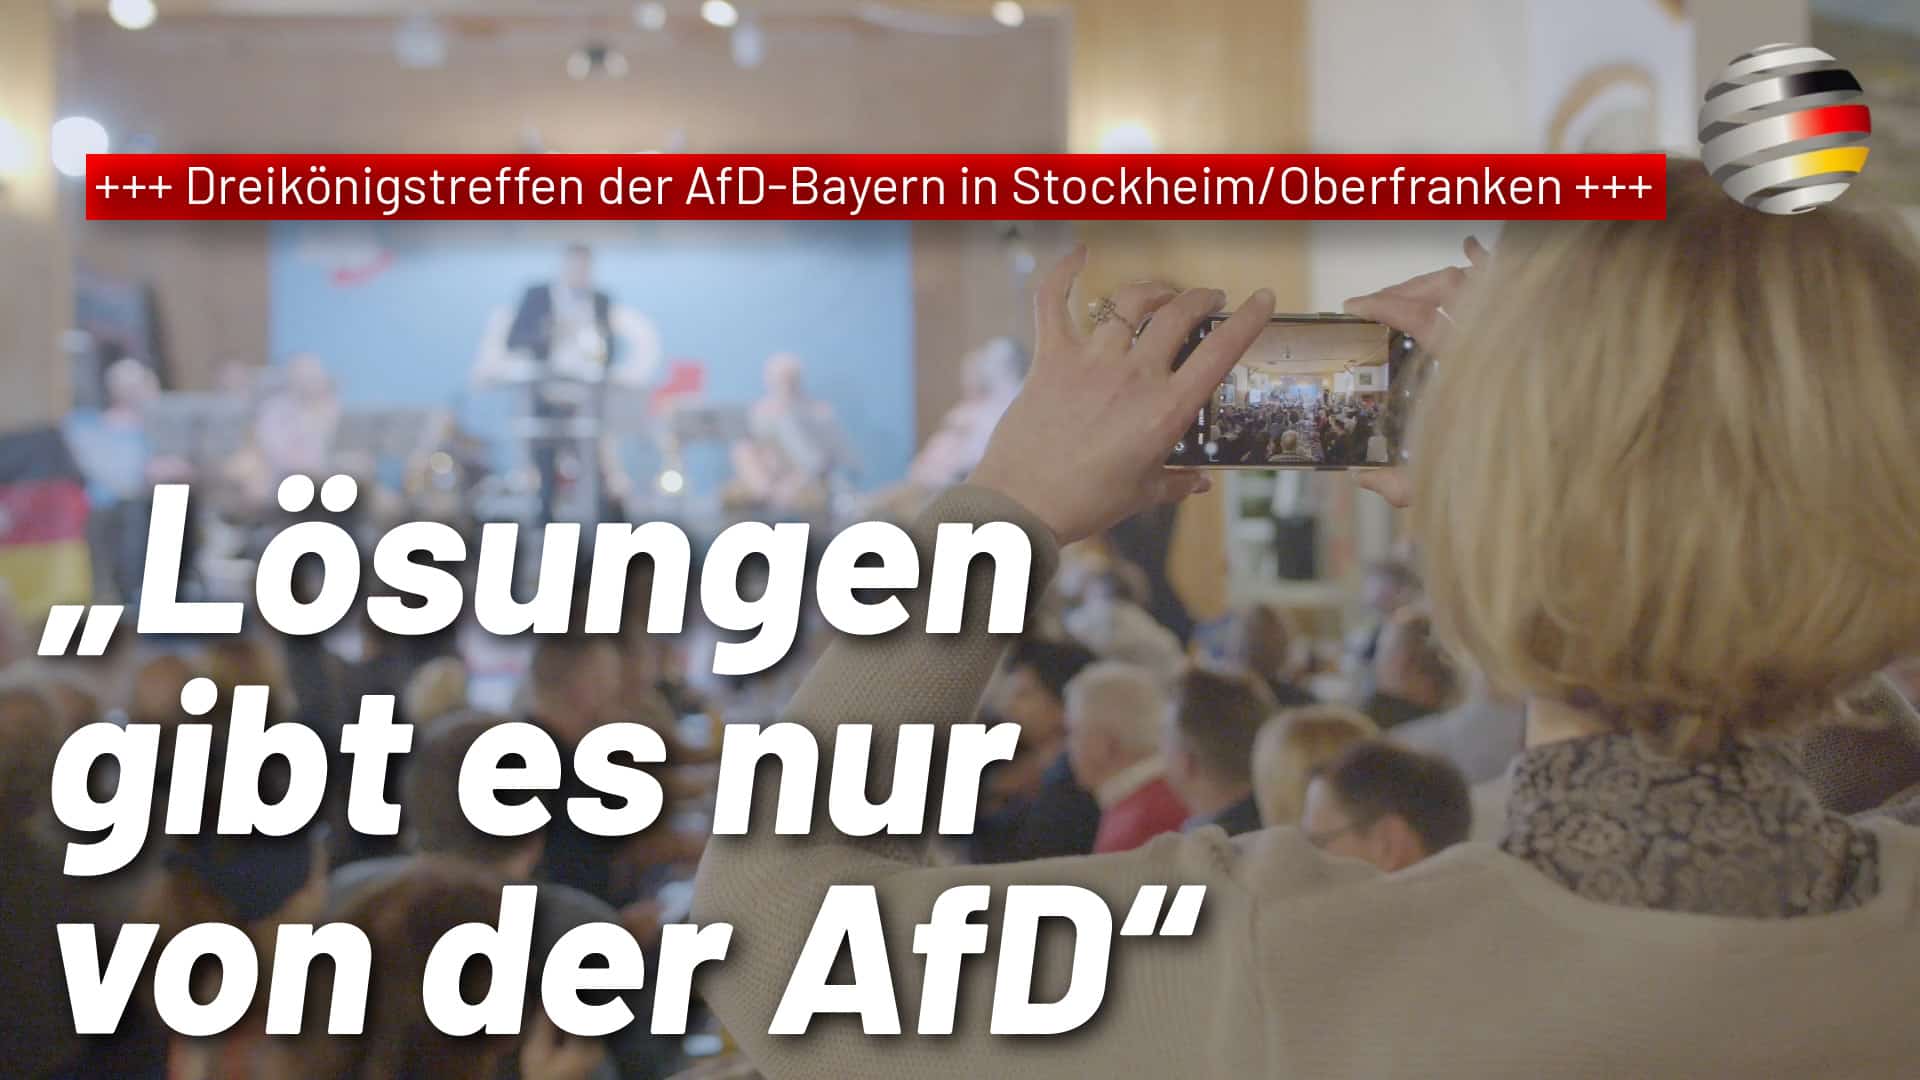 +++ Dreikönigstreffen der AfD-Bayern in Stockheim/Oberfranken +++  „Lösungen gibt es nur von der AfD!“